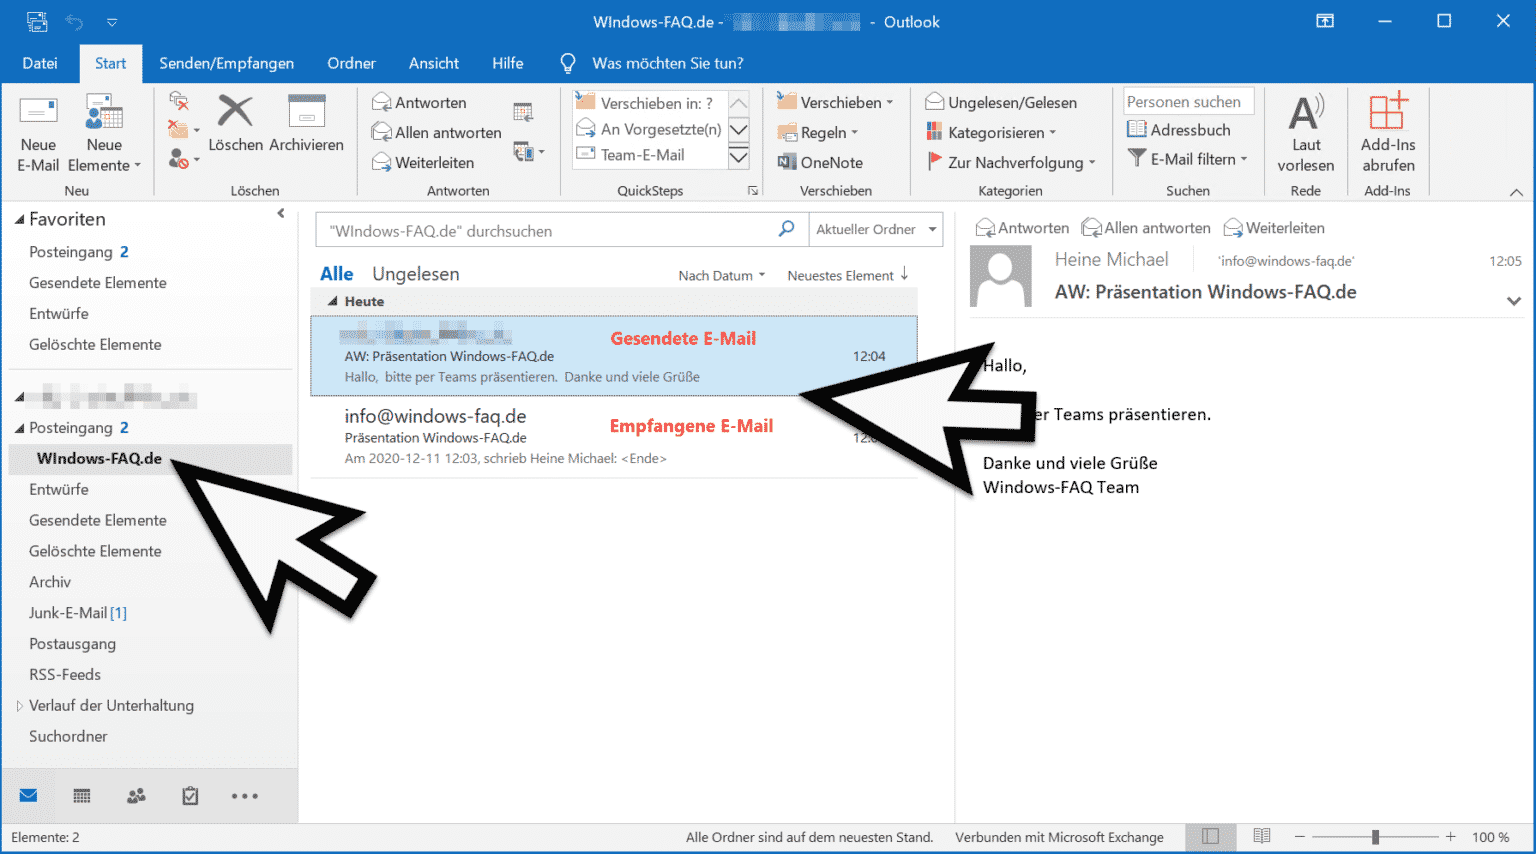 Im Outlook Empfangene Und Gesendete E Mail Im Gleichen Ordner Ablegen Hot Sex Picture